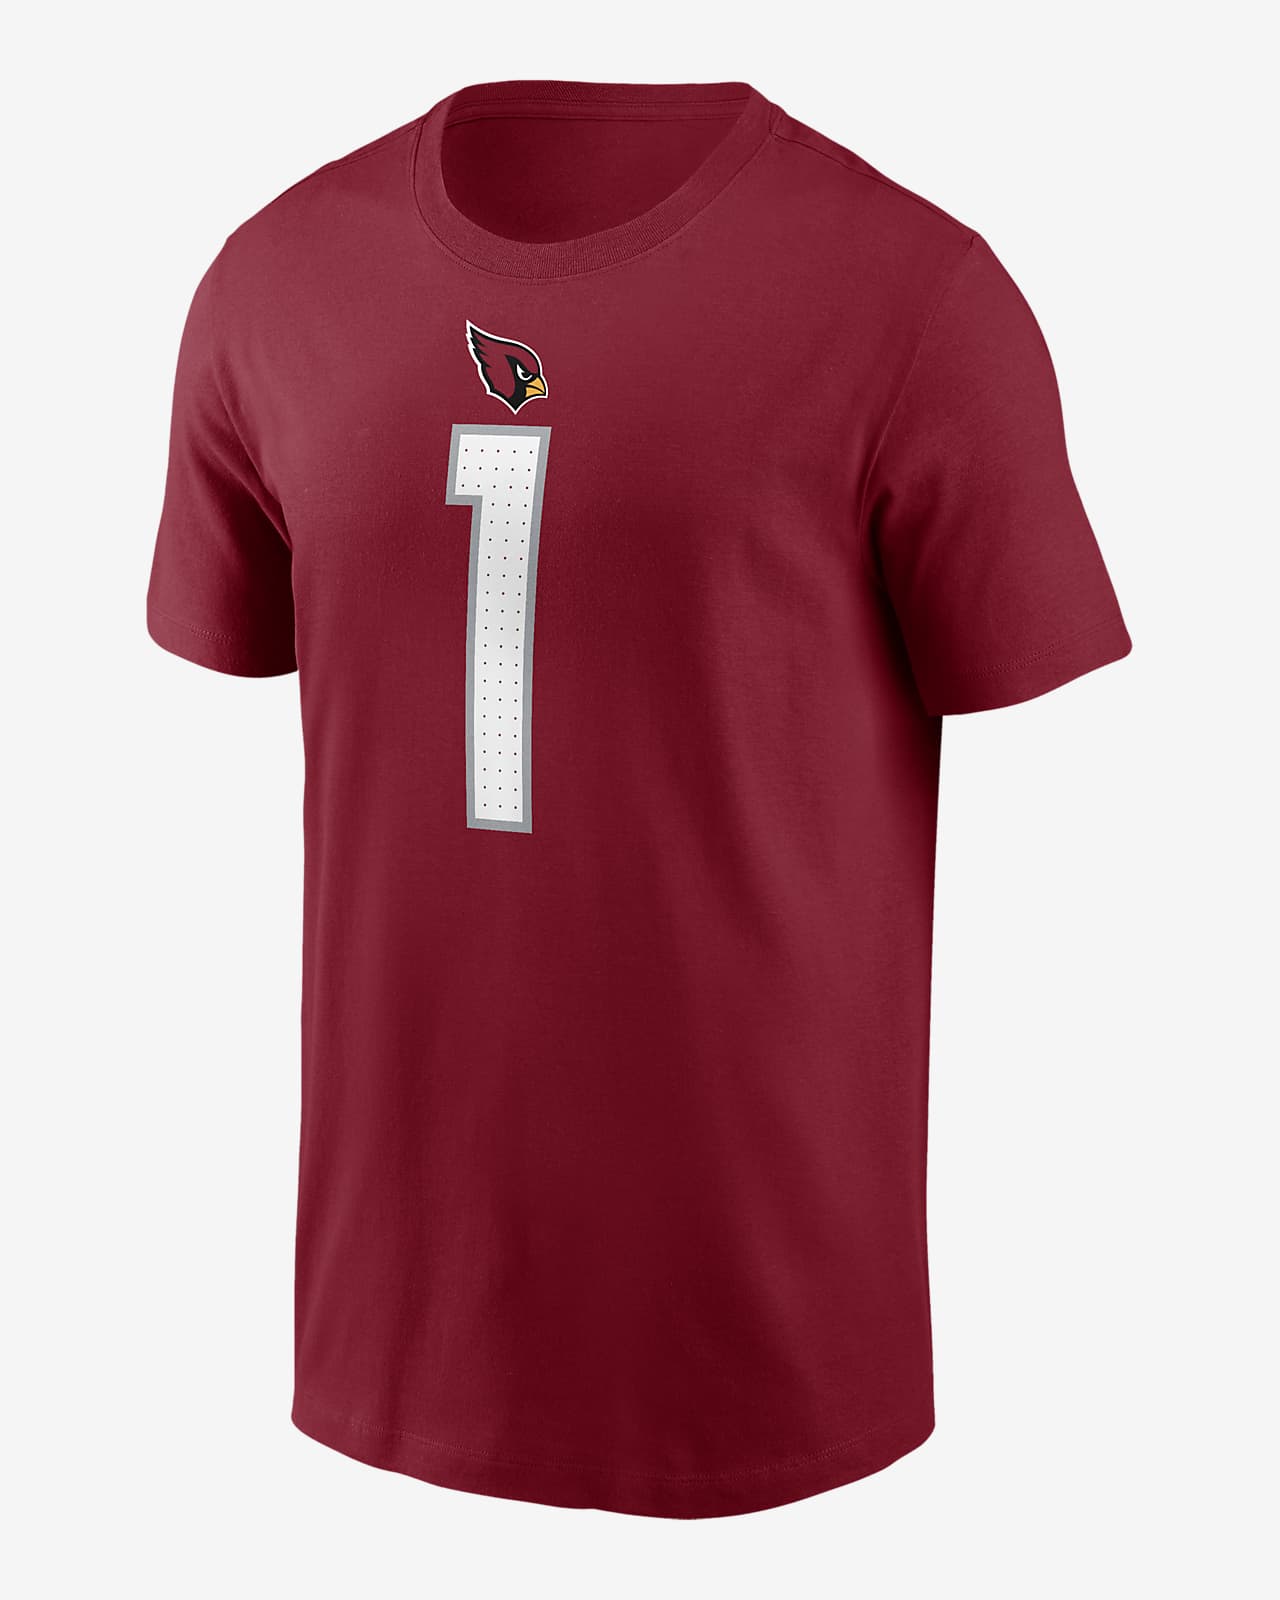 Kyler Murray Arizona Cardinals Men's Nike NFL T-Shirt